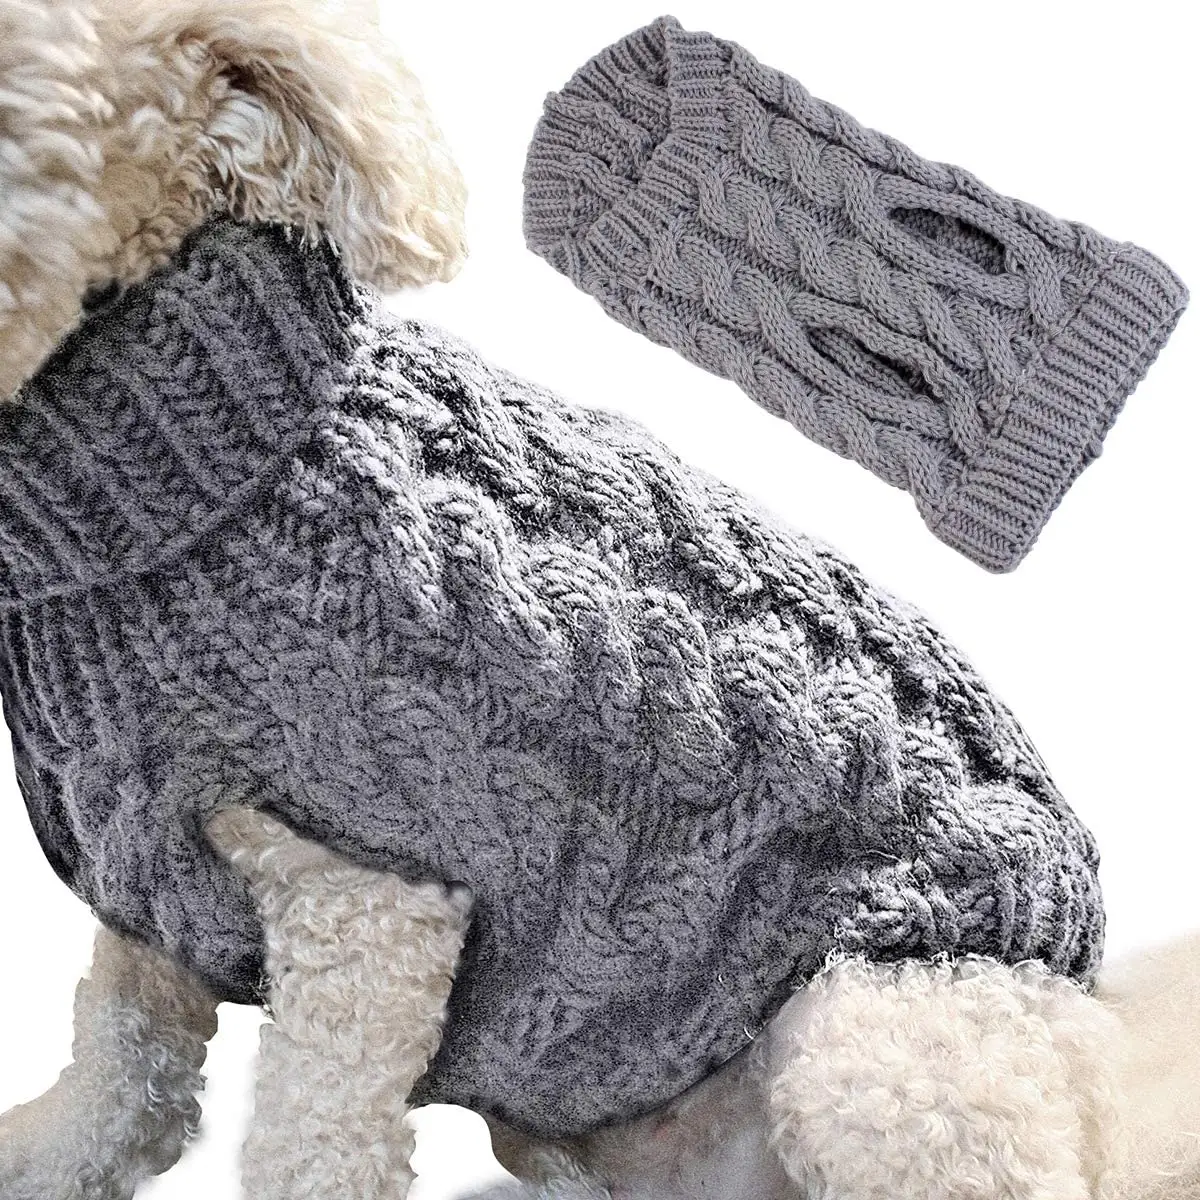 Pet köpek örgü kazak ceket kalınlaşma kazak triko tığ ceket elbise küçük orta büyük köpek için köpek kedi